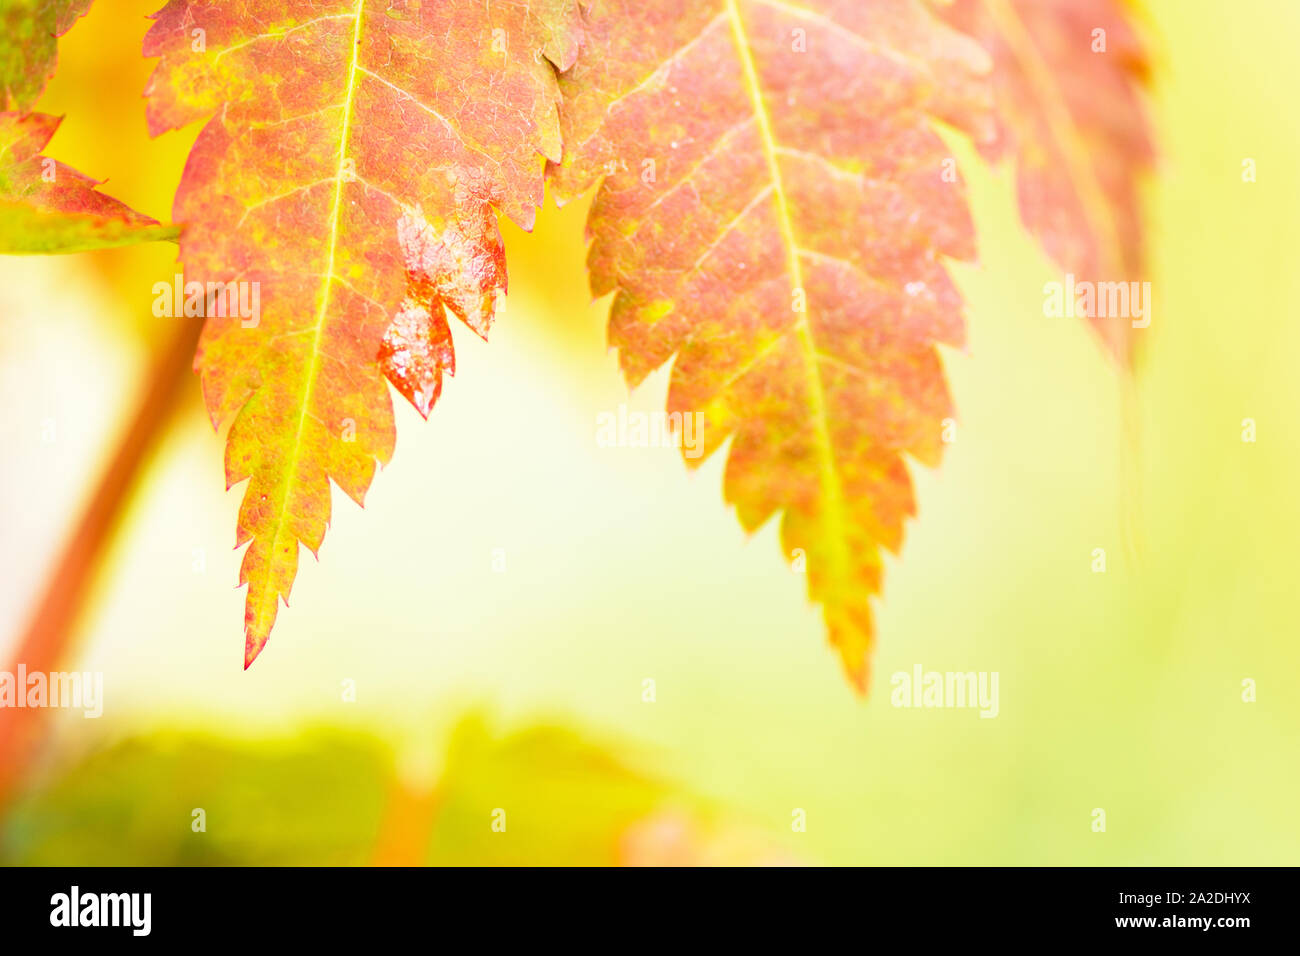 Herbst, Herbst, Blatt, Blätter, Ahorn, Acer pseudosieboldianum, Baum, maple leaf Maple Leaves, Saison, Saison-, Laub, Wald, Herbst Hintergrund, bok Stockfoto